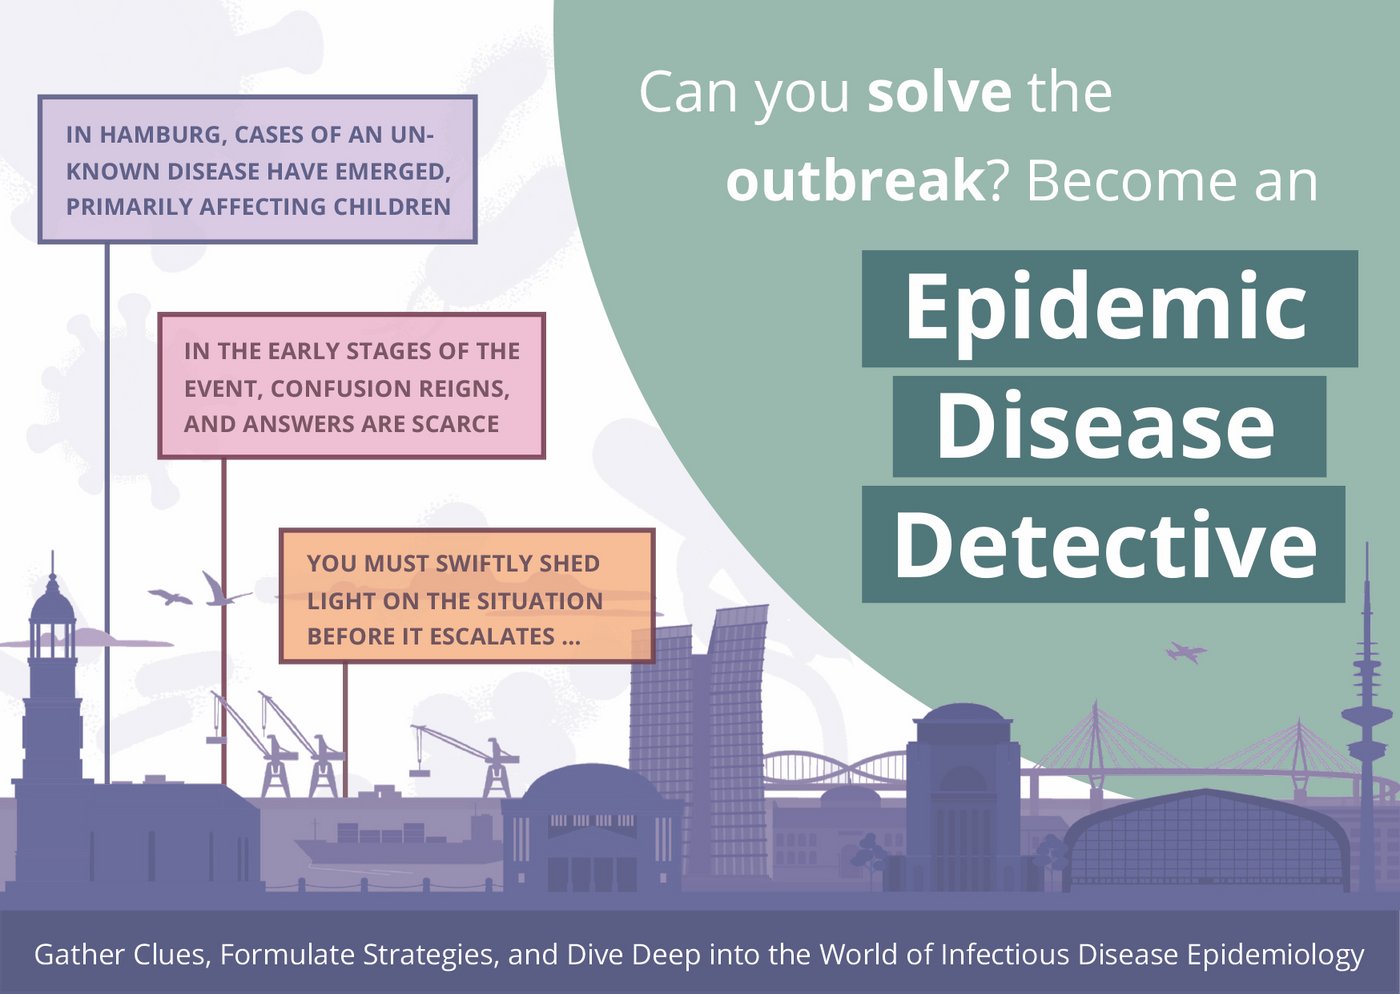 Informationskarte zum Lernspiel "Epidemic Disease Detectives". Abgebildet ist die Silhouette der Stadt Hamburg, in der ein mysteriöser Infektionsausbruch aufgetreten ist.